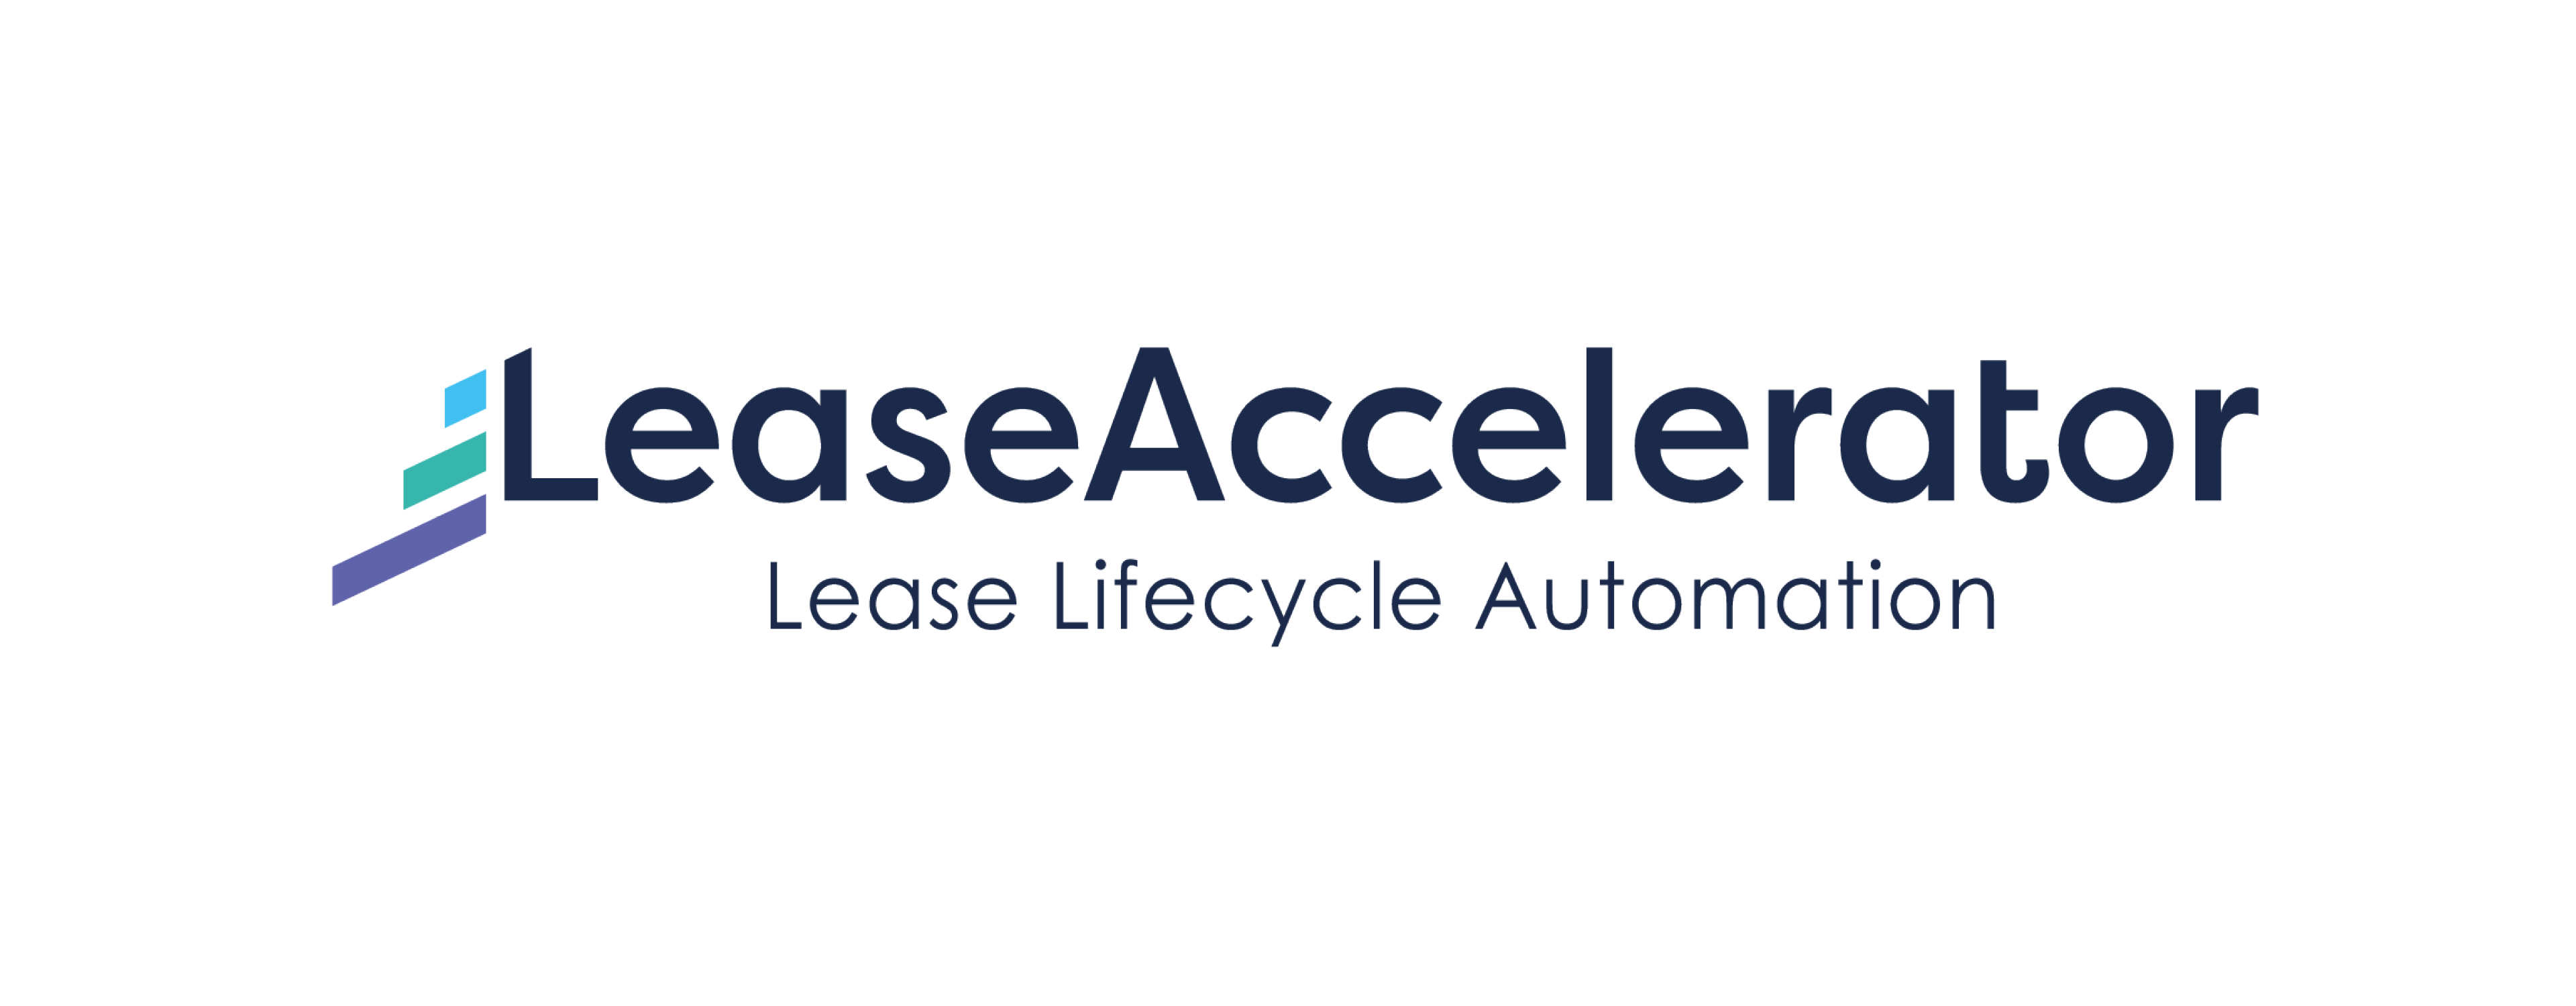 LeaseAccelerator logo